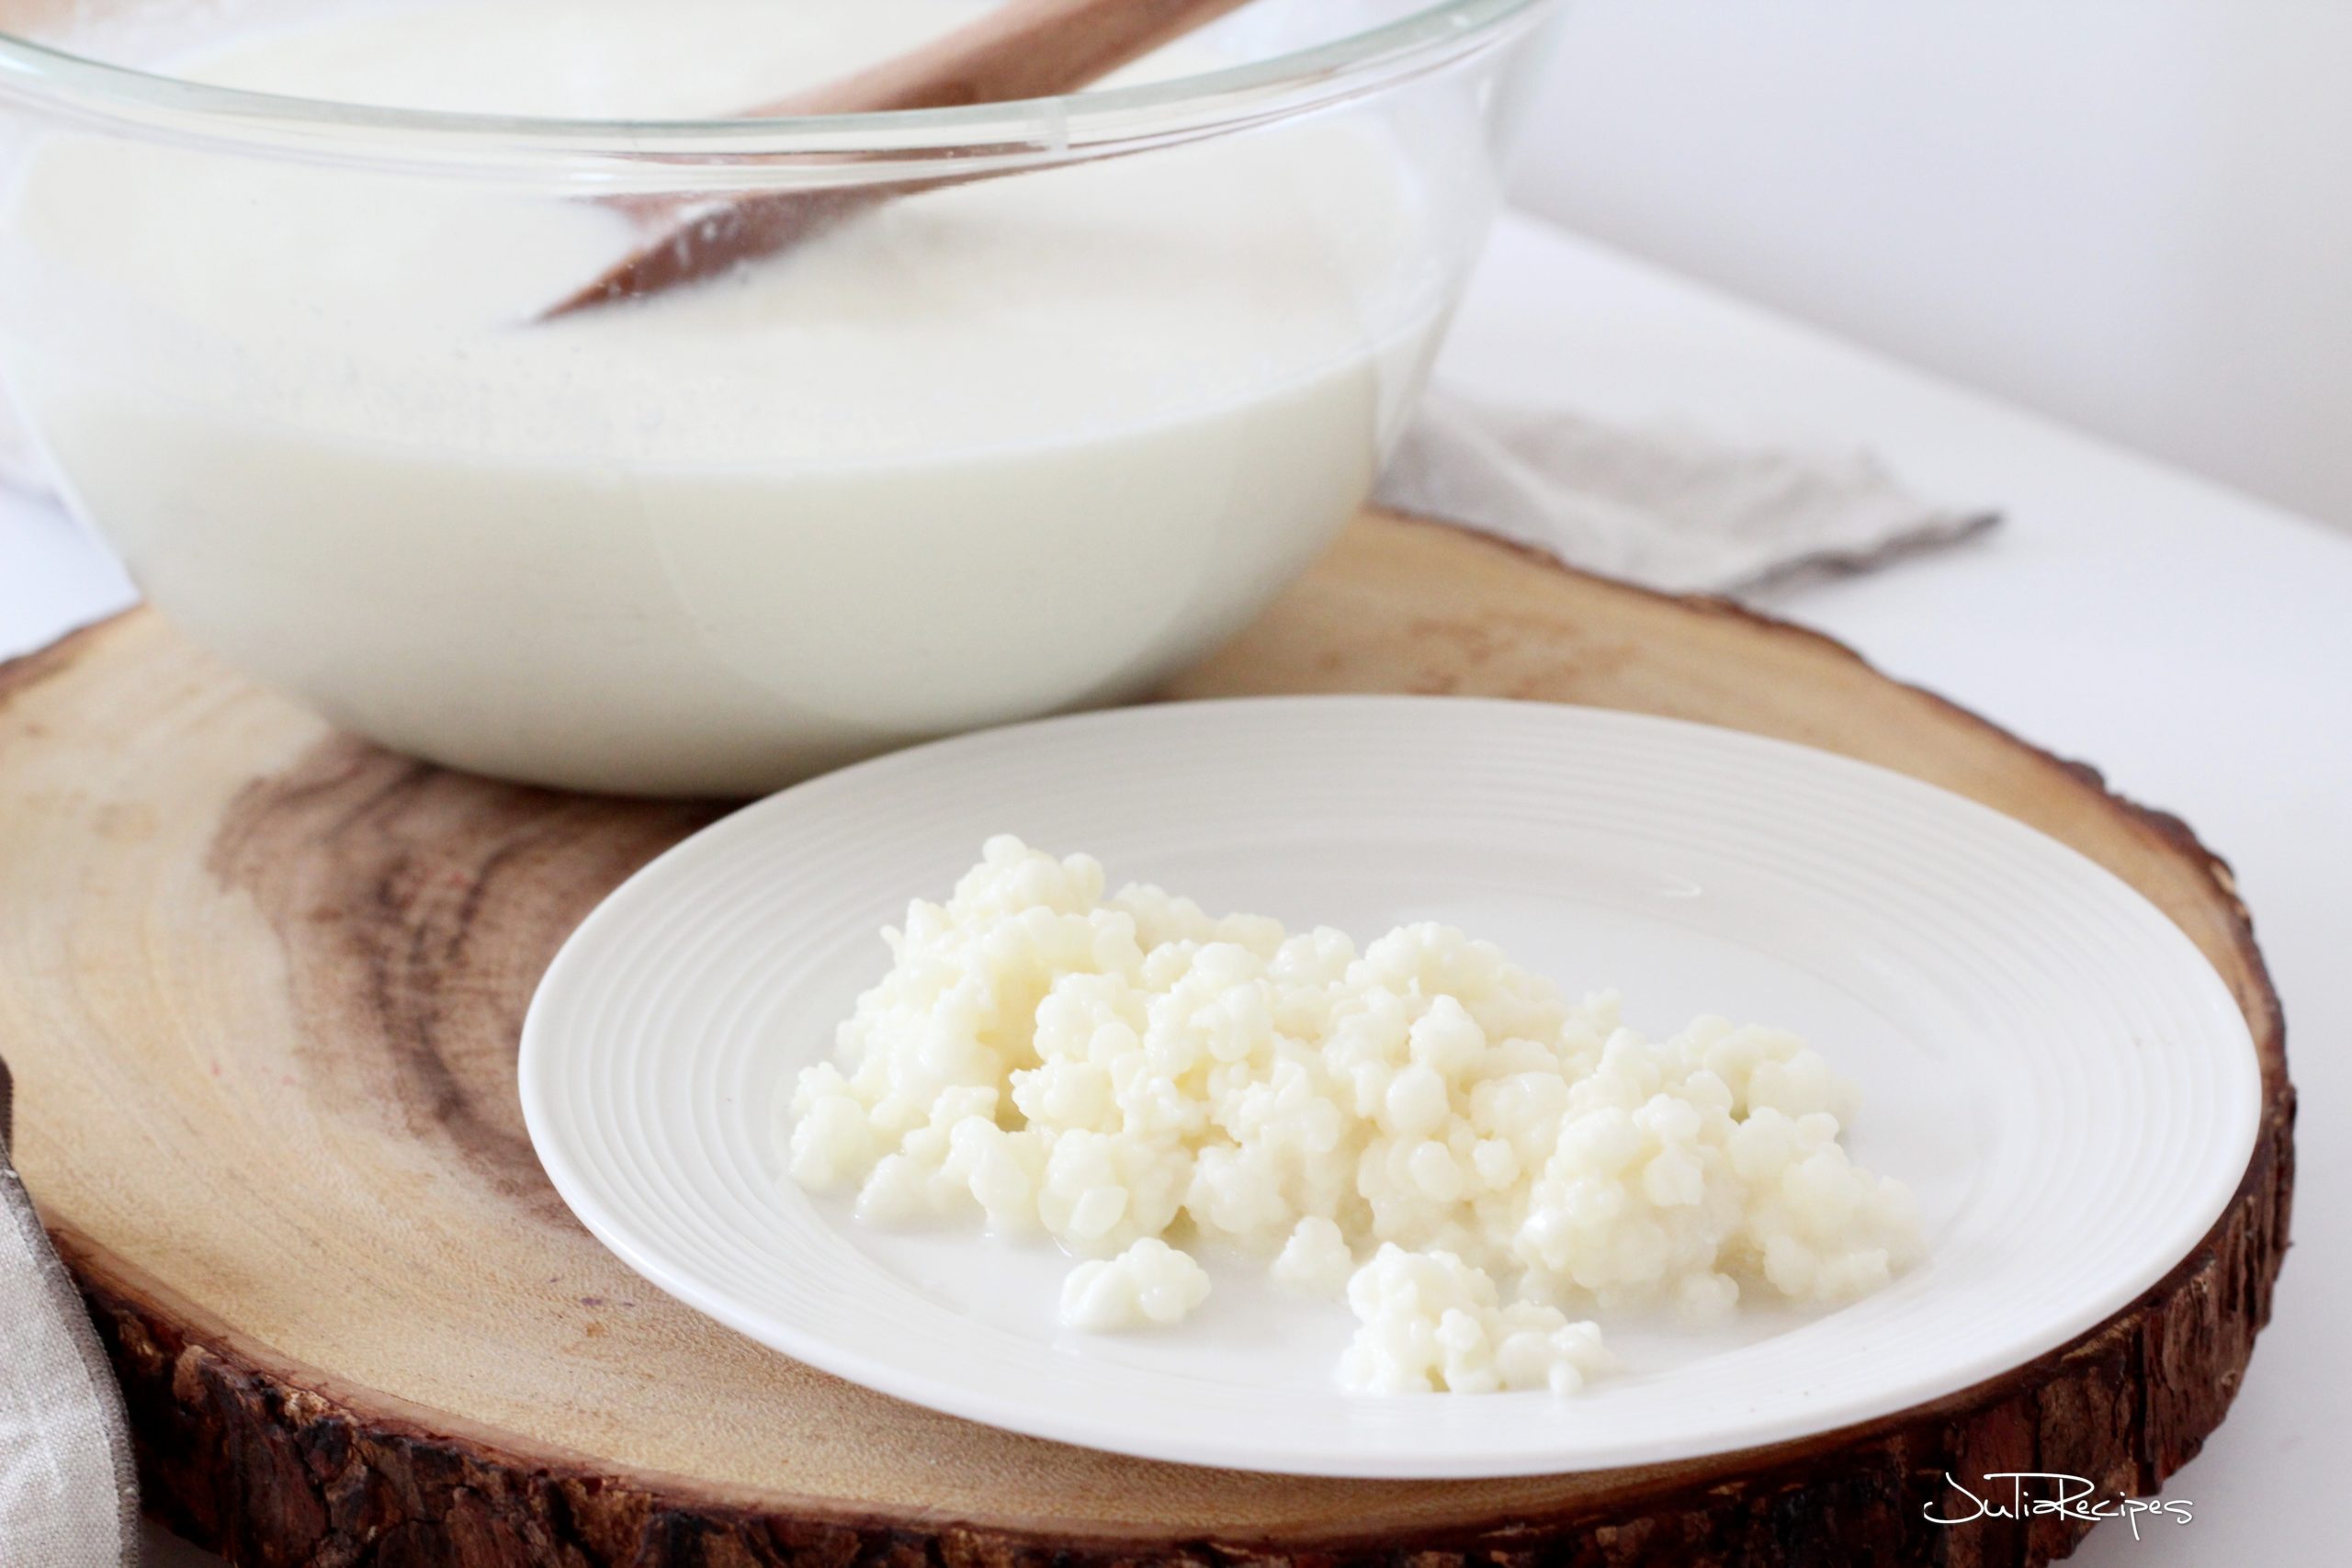 milk grains for making kefir on plate